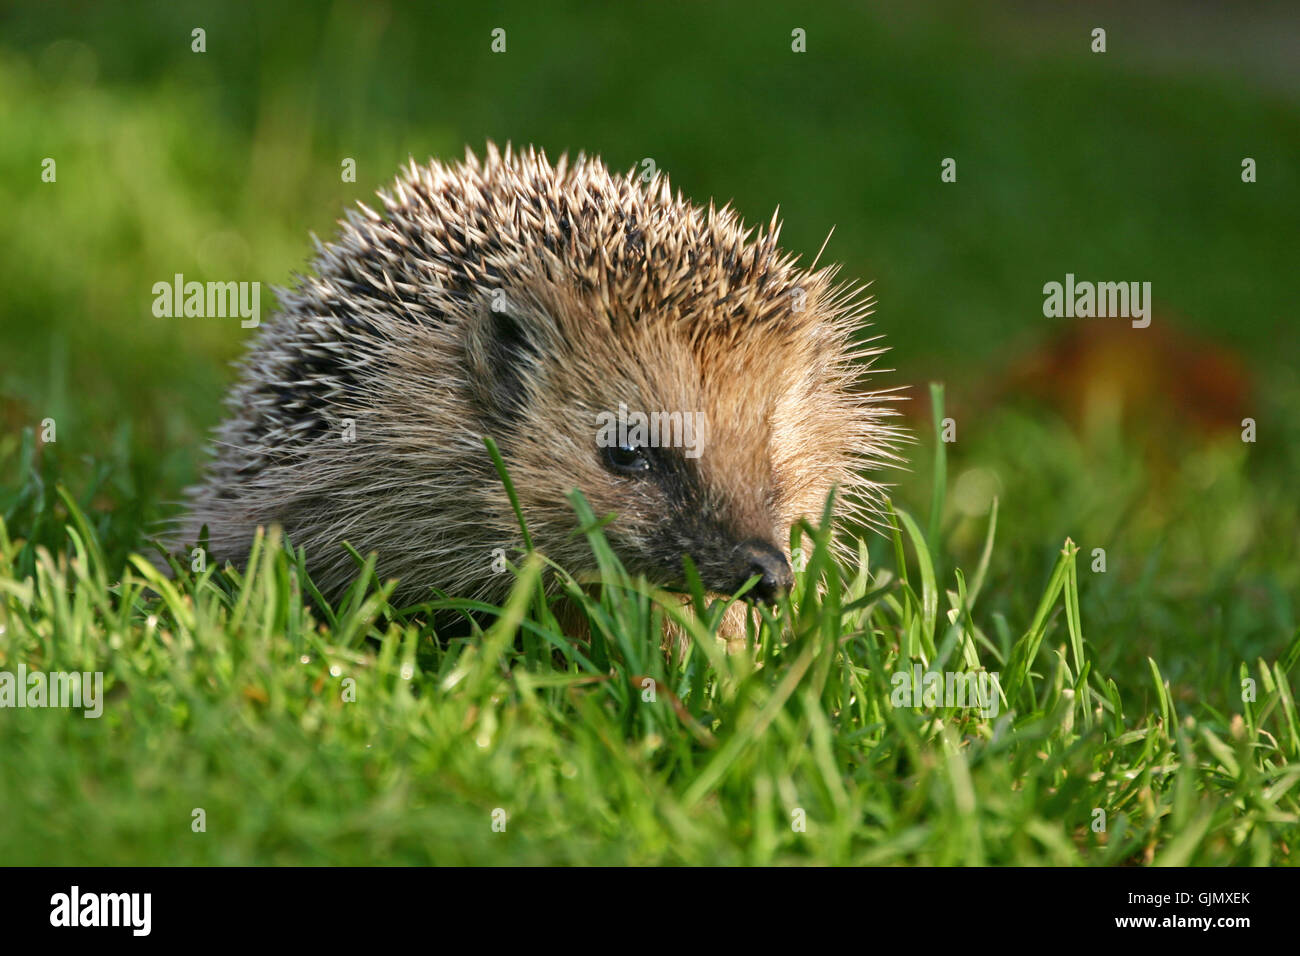 hedgehog in the garden Stock Photo